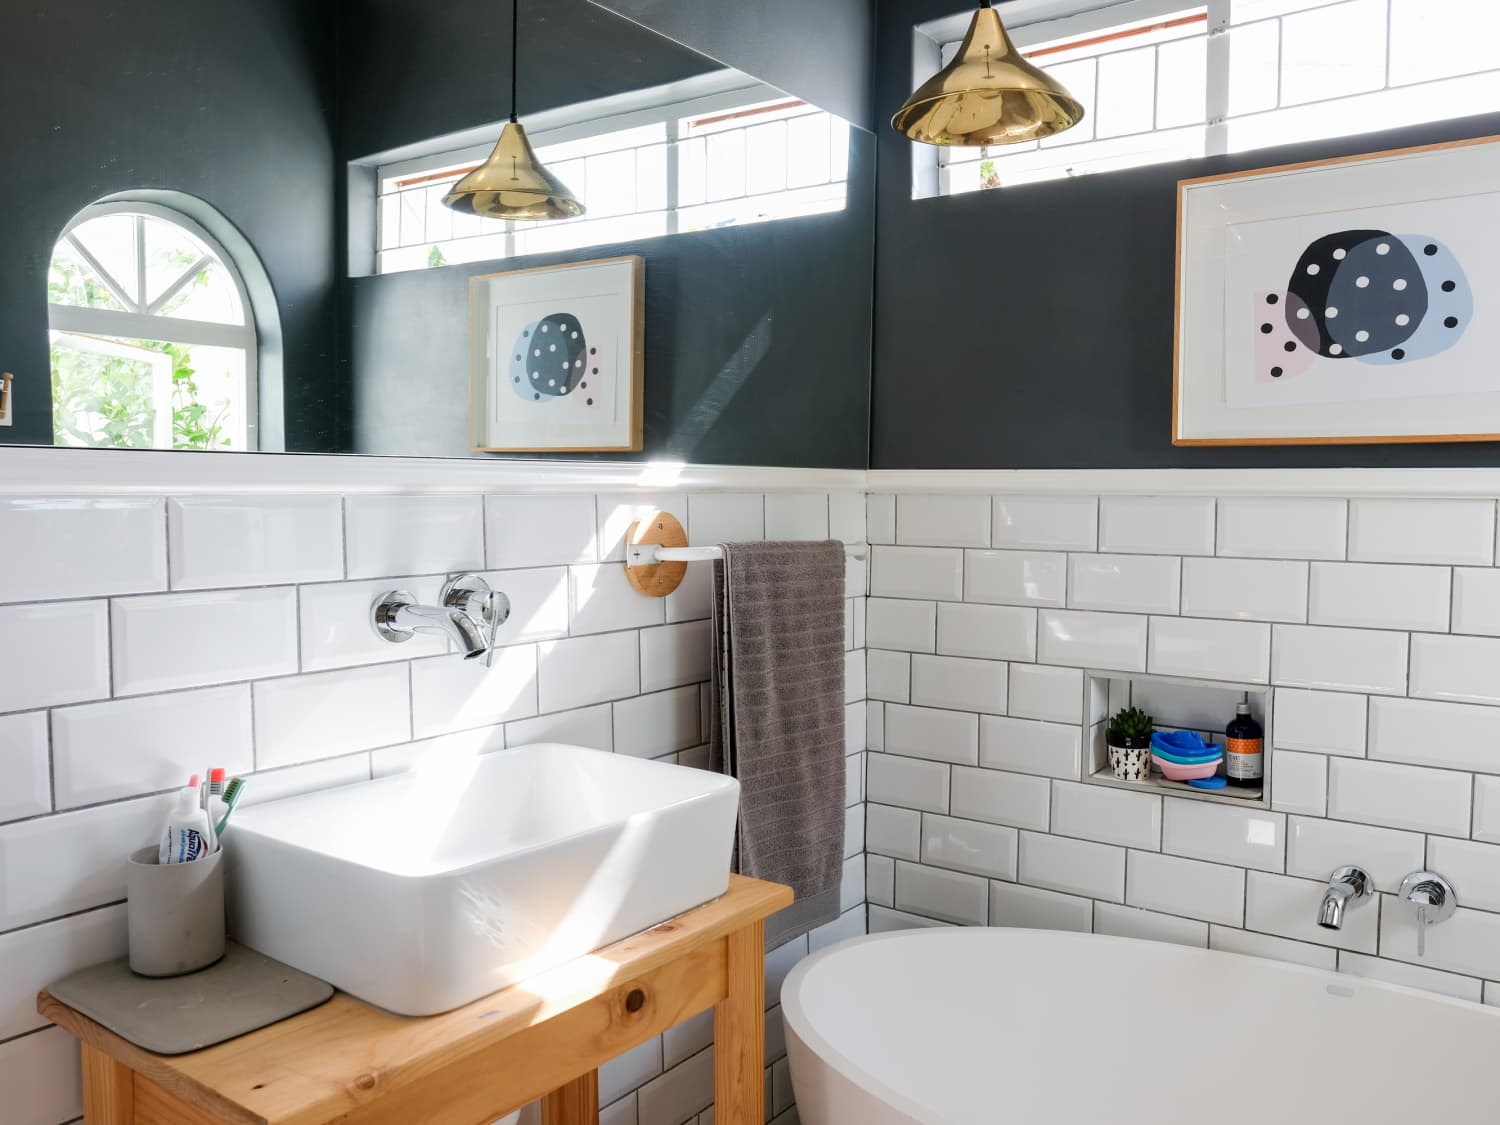 25 Best Built-in Bathroom Shelf and Storage Ideas for 2019  Bathroom  remodel master, Built in bathtub, Bathroom interior